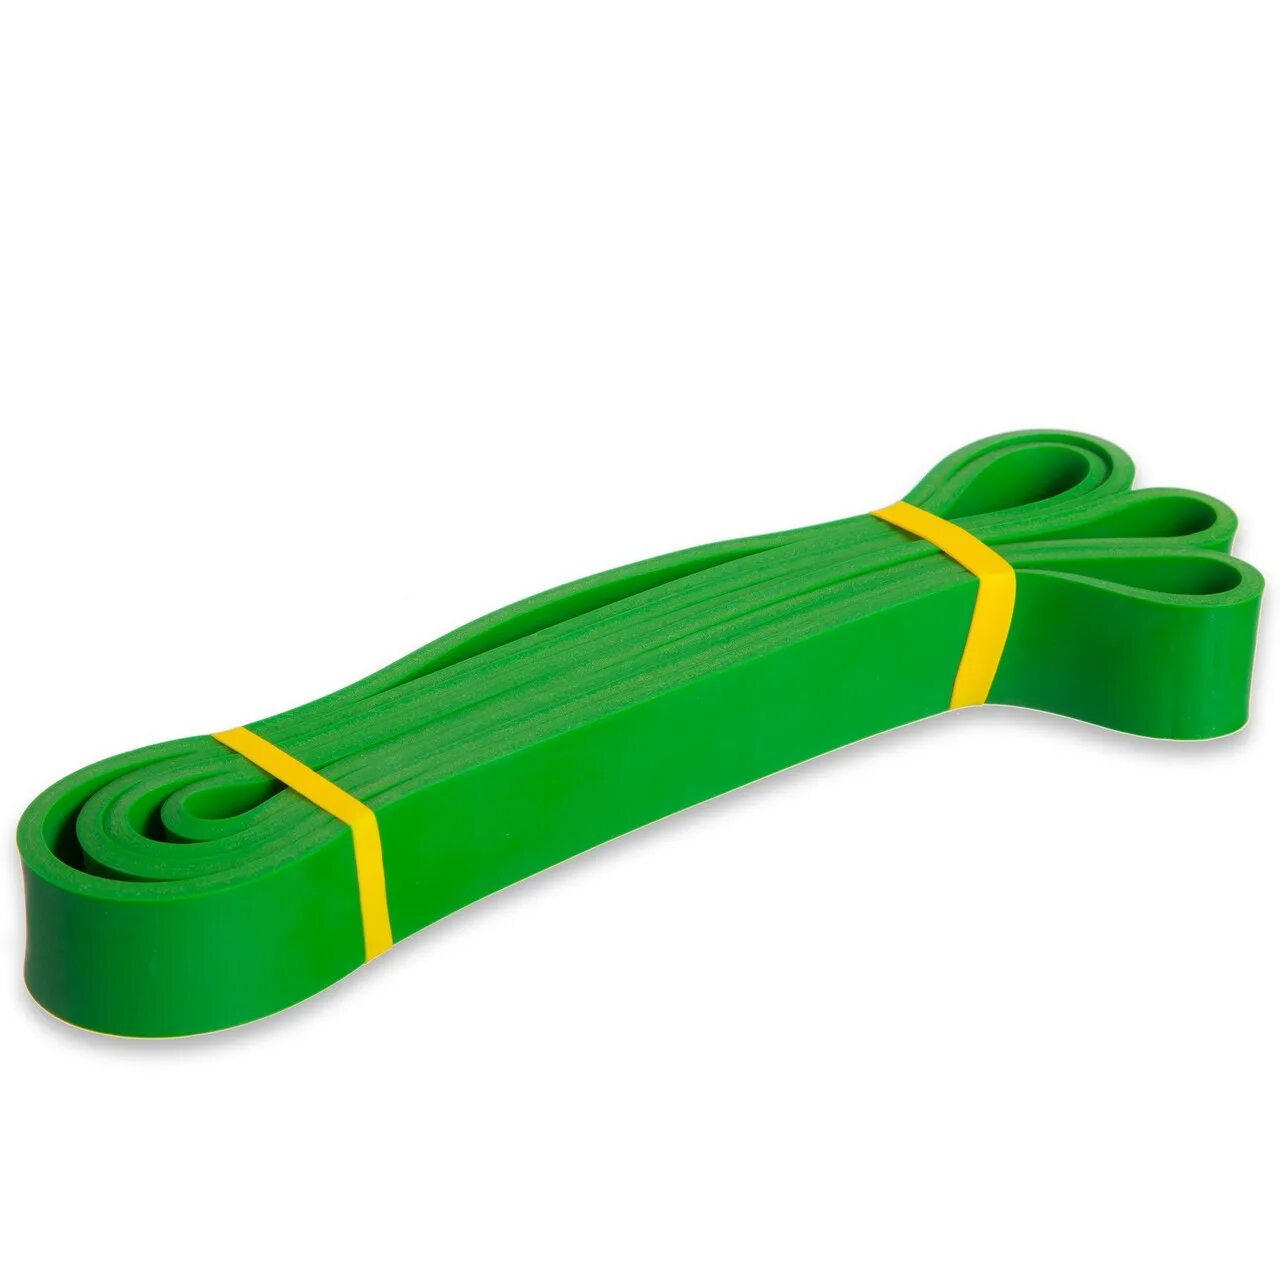 Zelart резинка зелёная. Эспандер для подтягивания. Резинка для фитнеса с петлями. Резинка для подтягивания. Резиновая петля для подтягивания